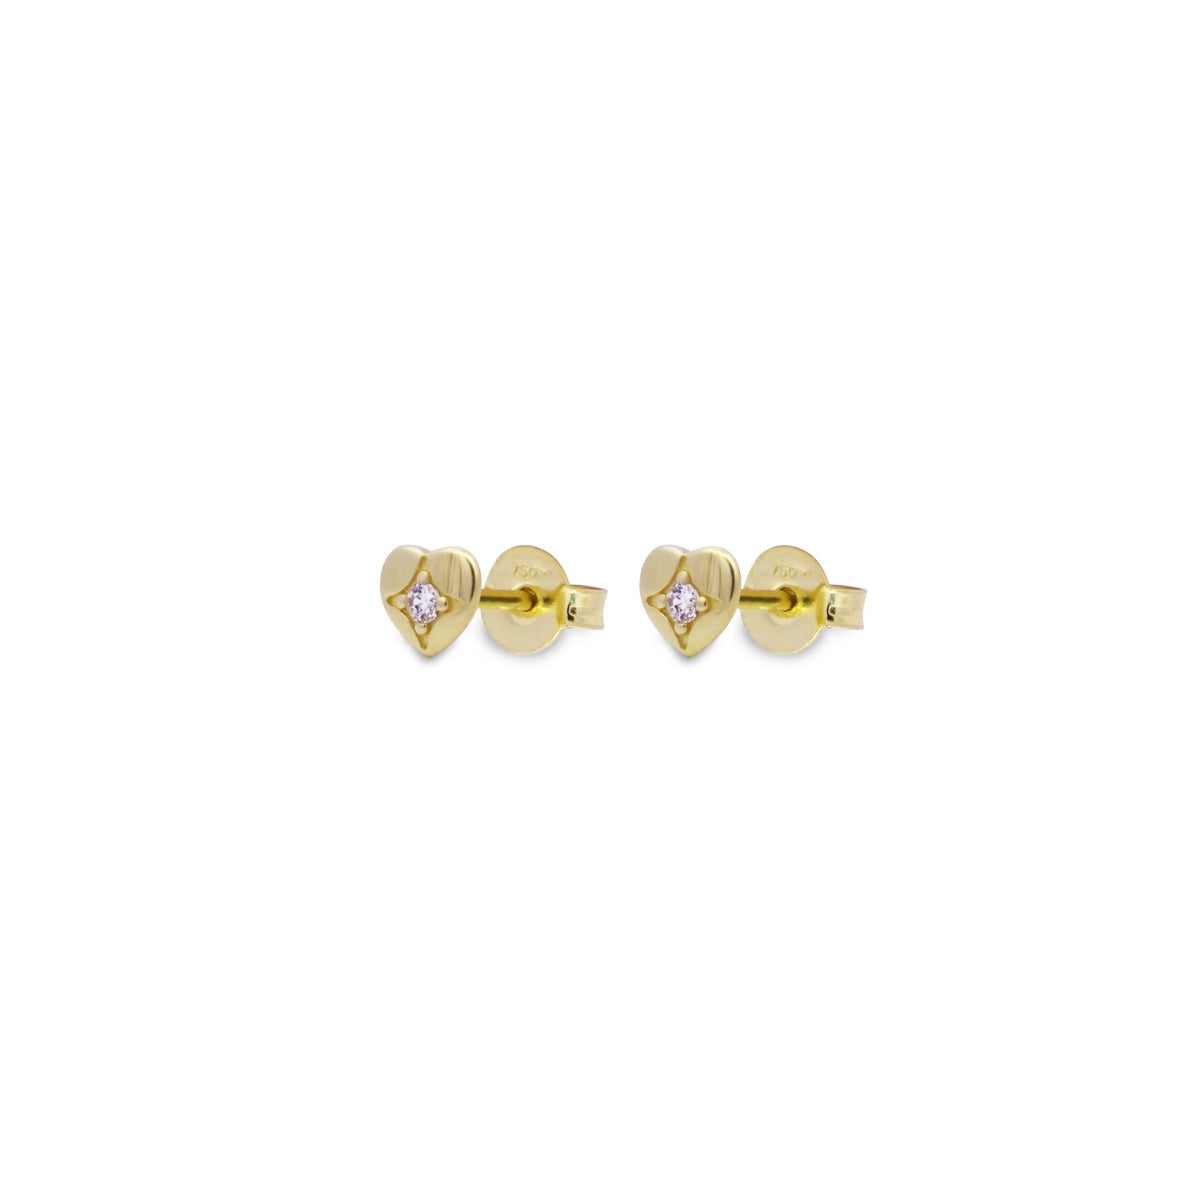 Earrings - Heart lobe earrings with central lab-grown diamond - ORO18KT - 1 | Rue des Mille